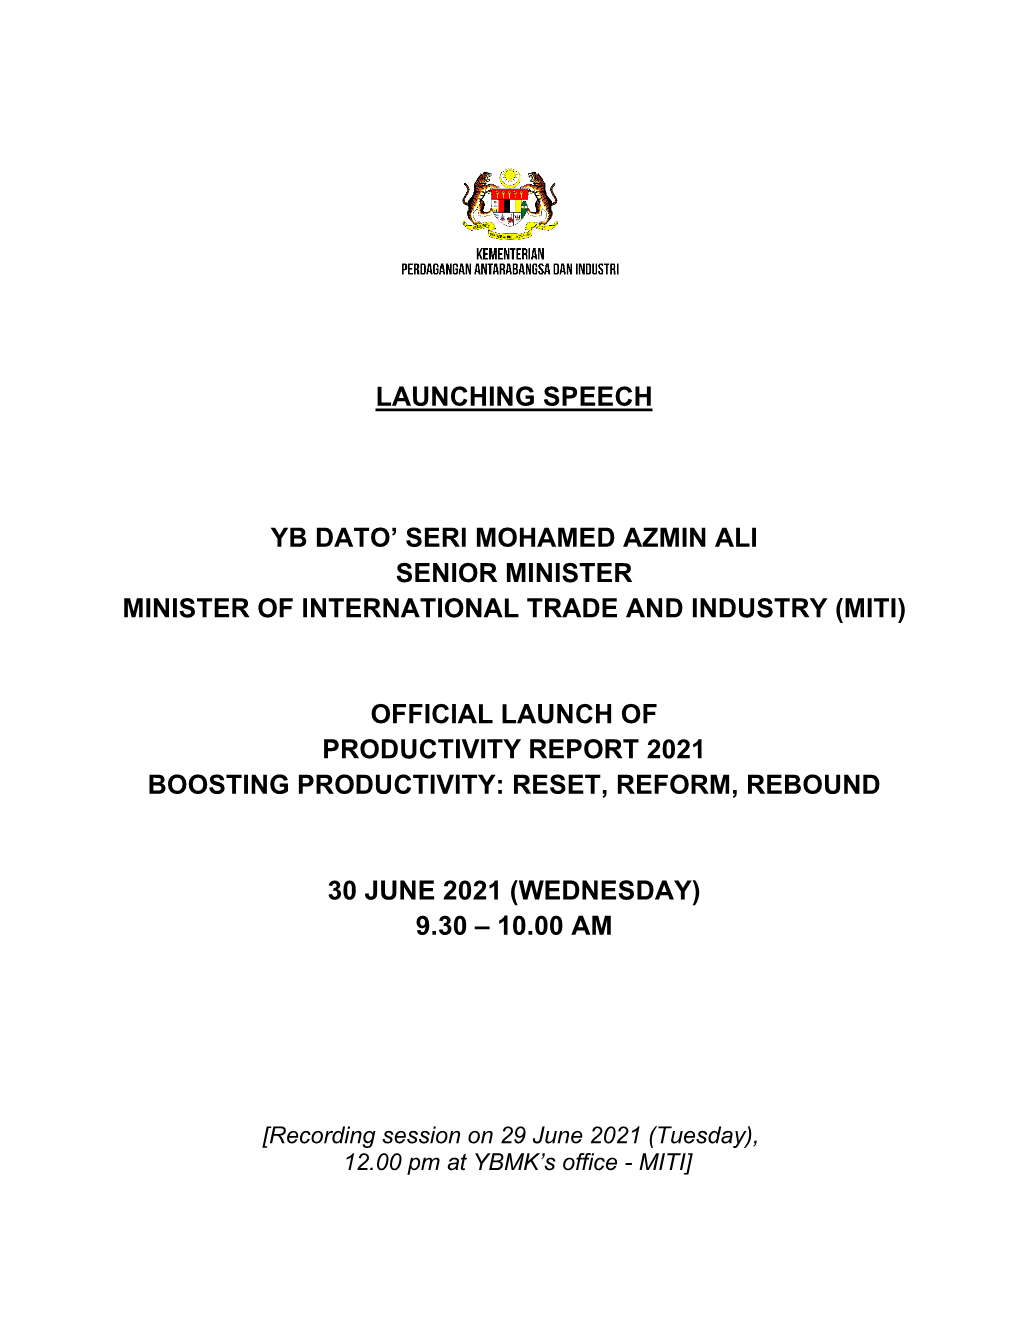 Launching Speech Yb Dato' Seri Mohamed Azmin Ali